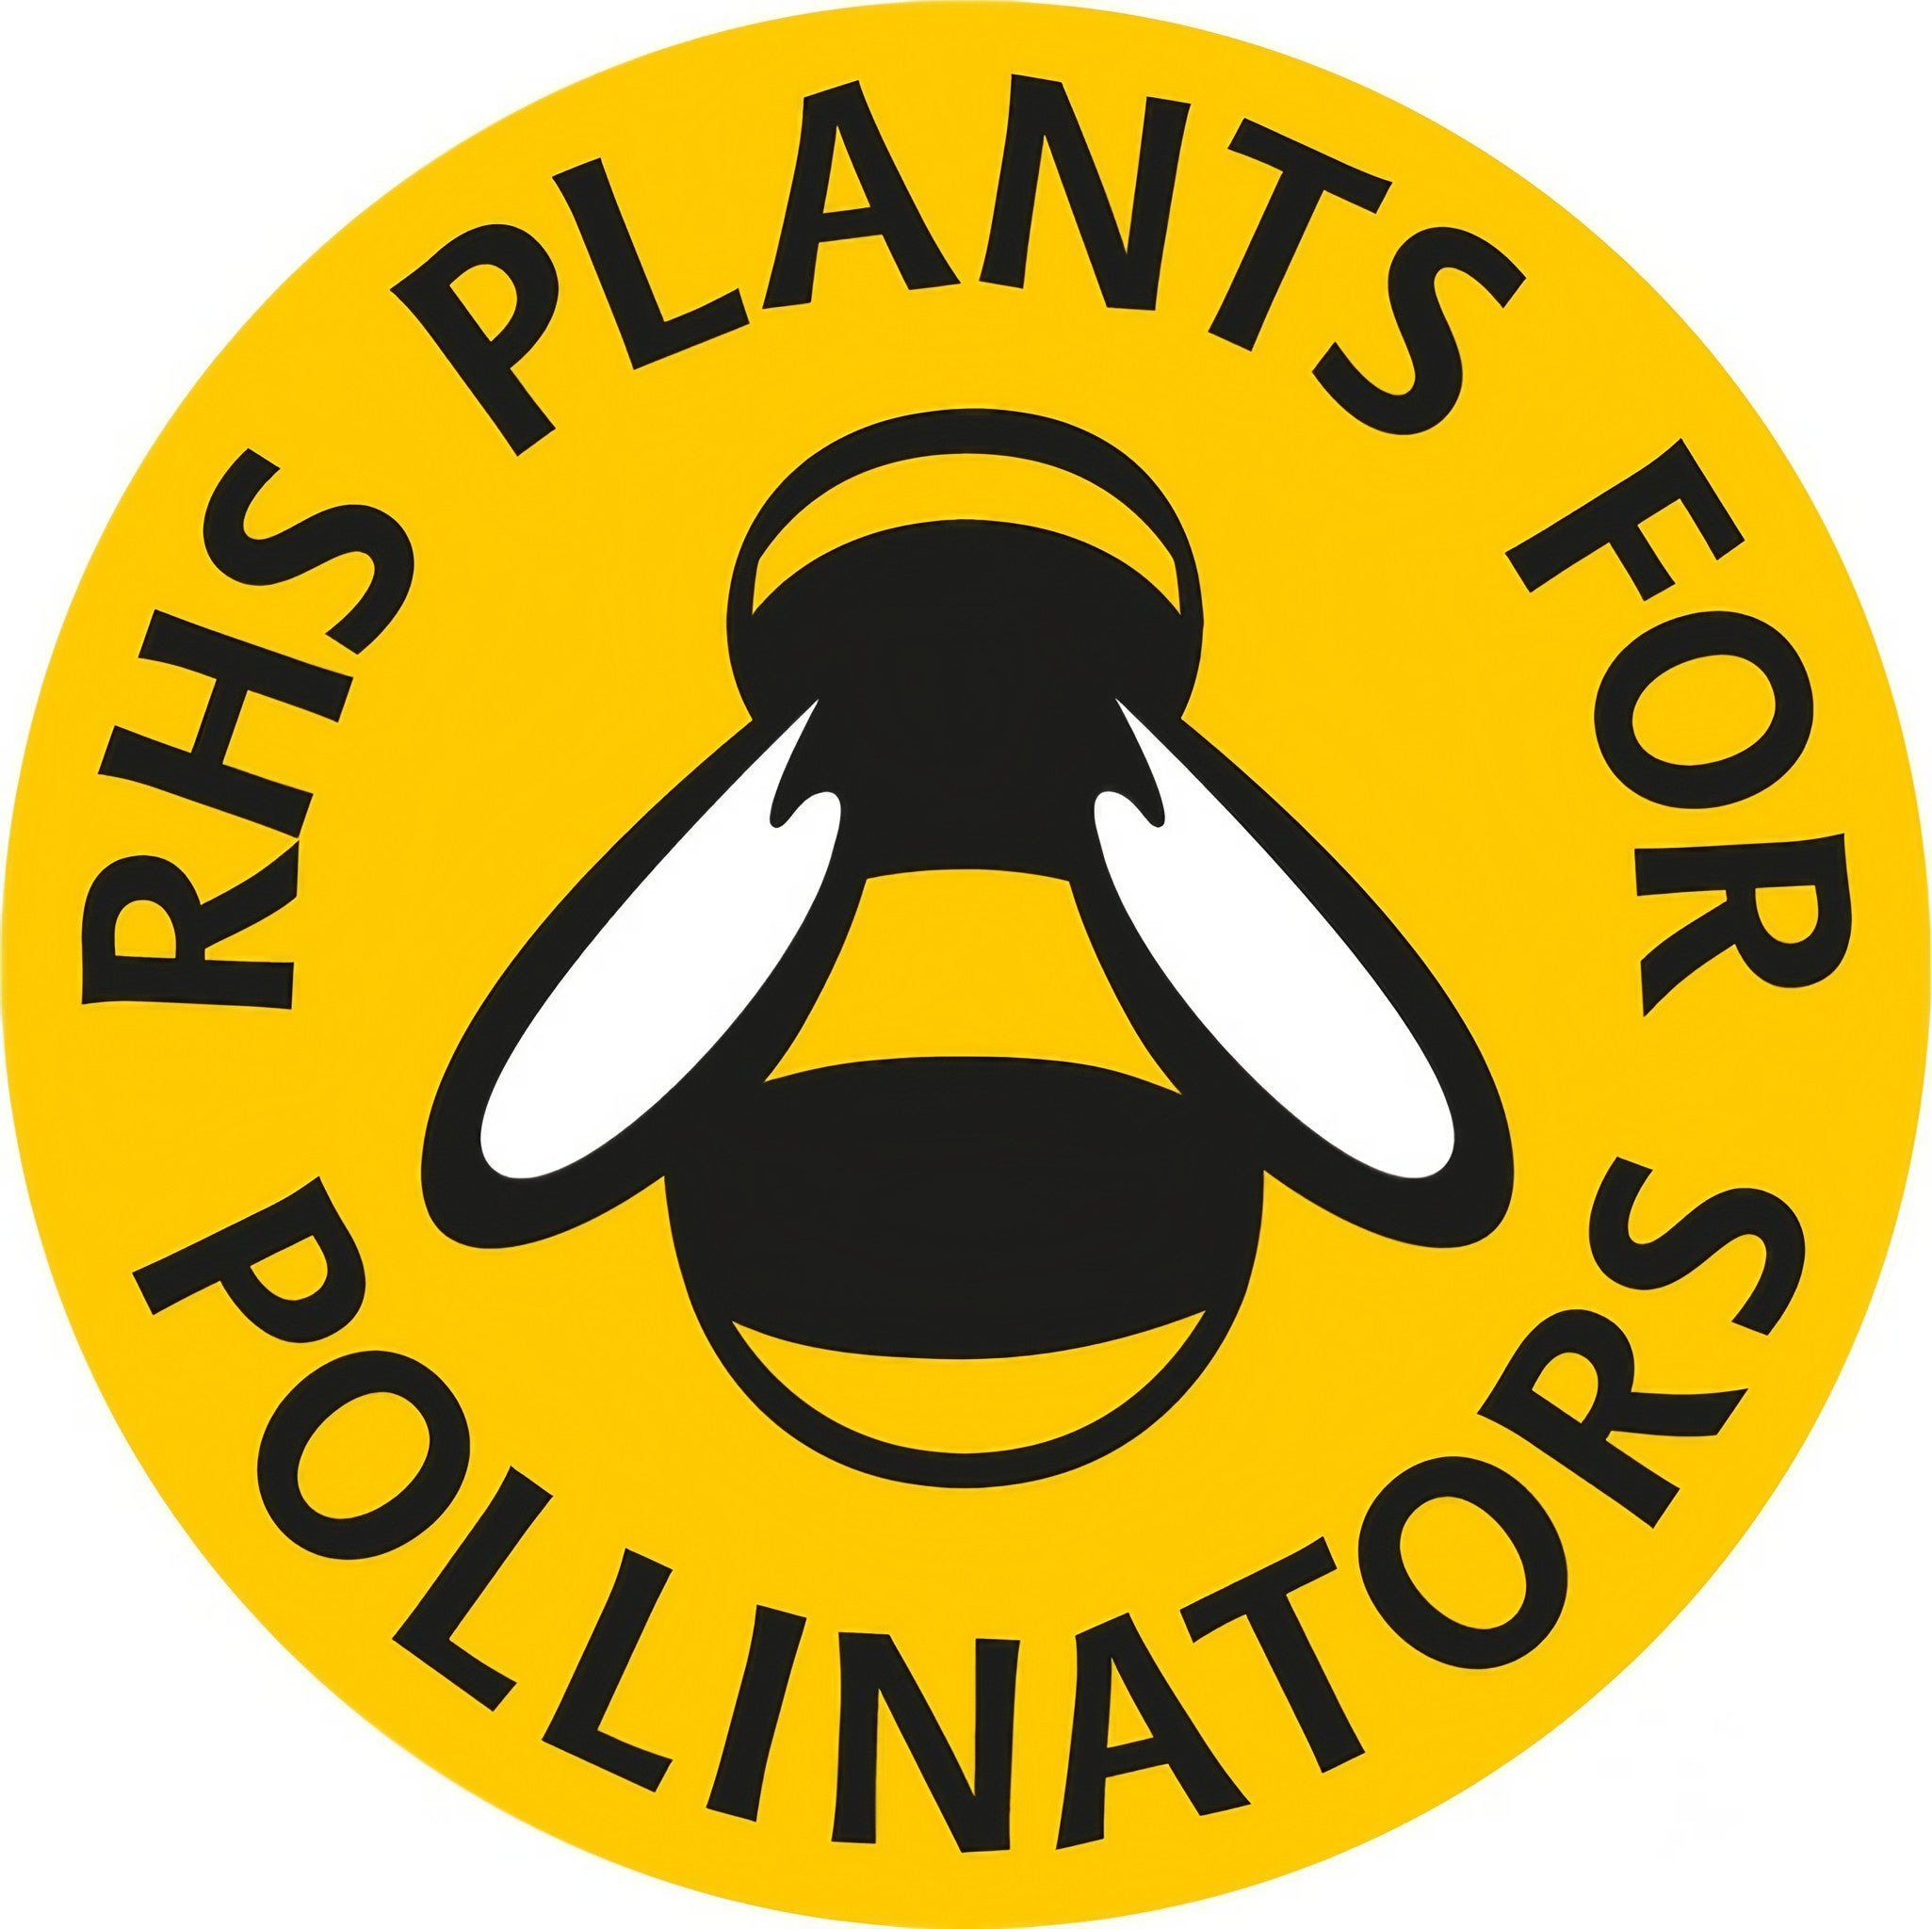 Hollyhock Nigra, a plant attractive to pollinators